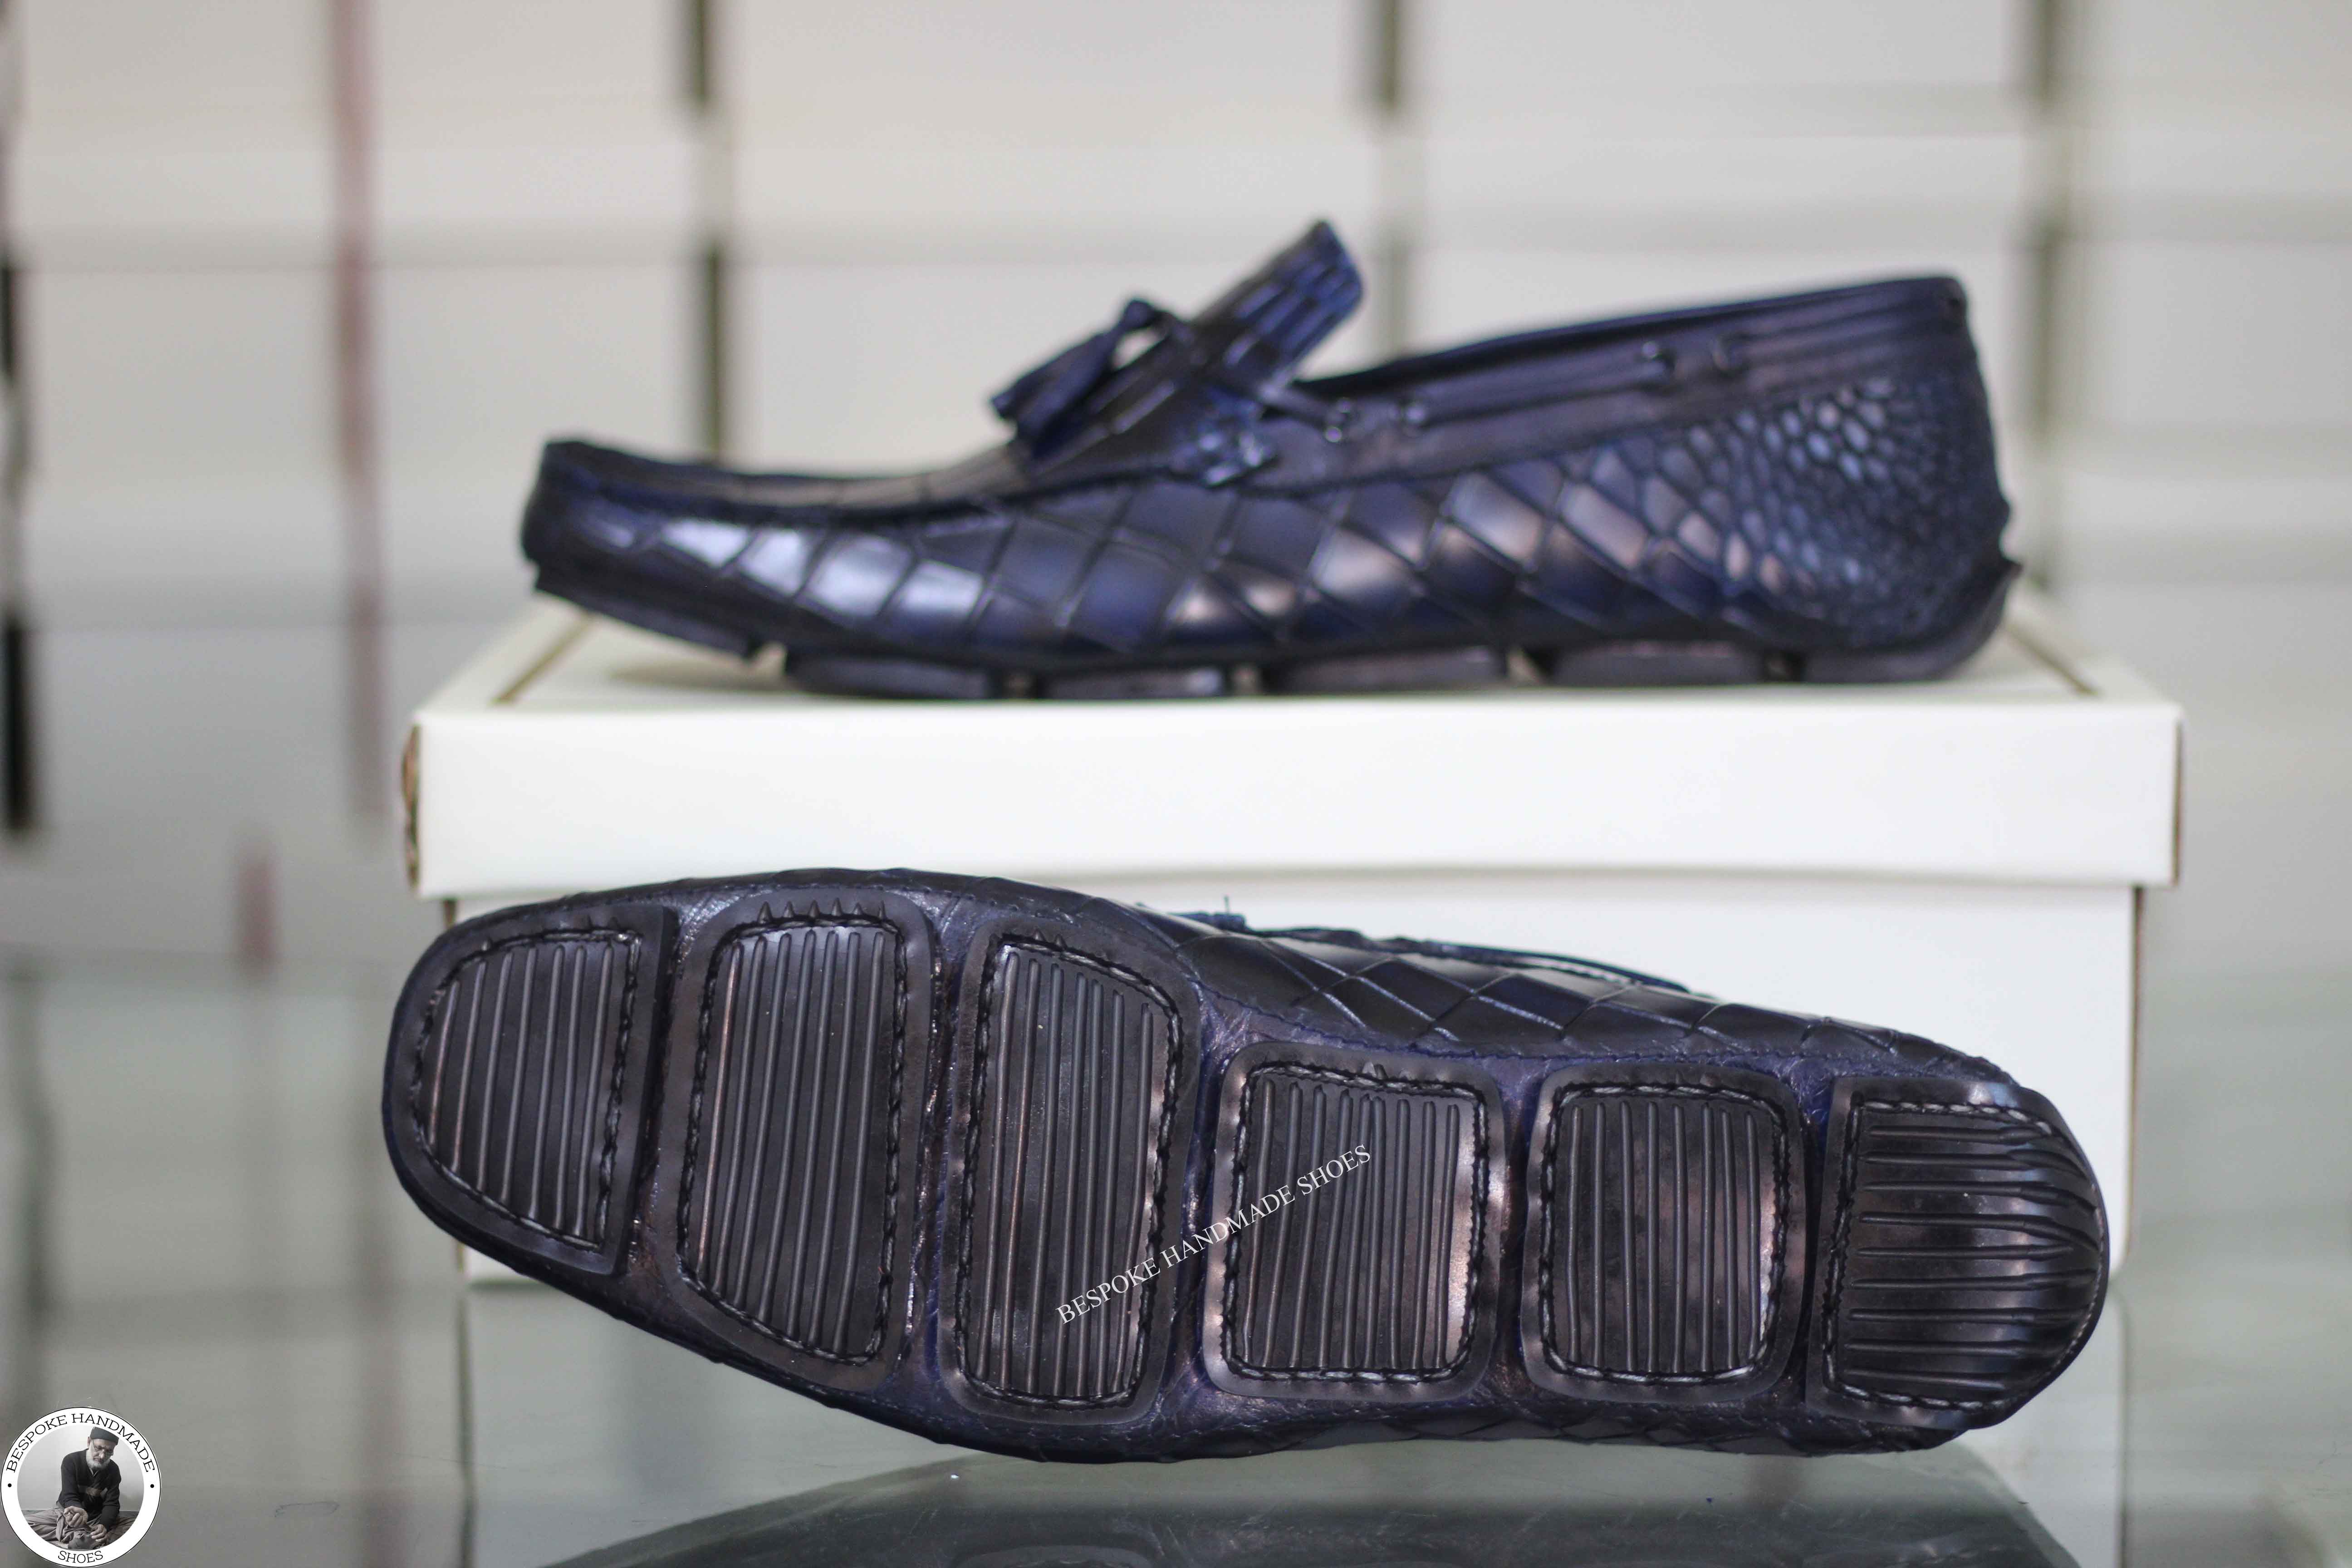 Bespoke Men's Handmade Black Leather Slip On Leather Tassel Loafer Casual Men's Shoes